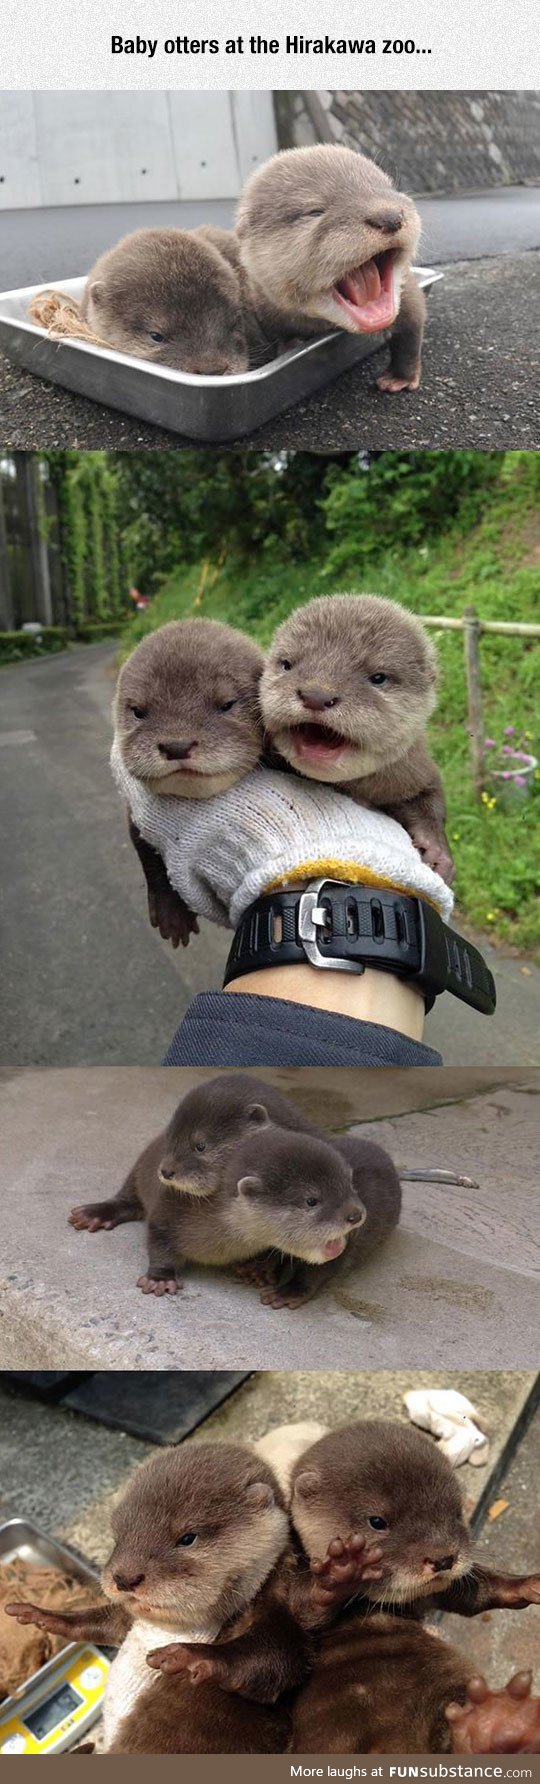 Tiny baby otters